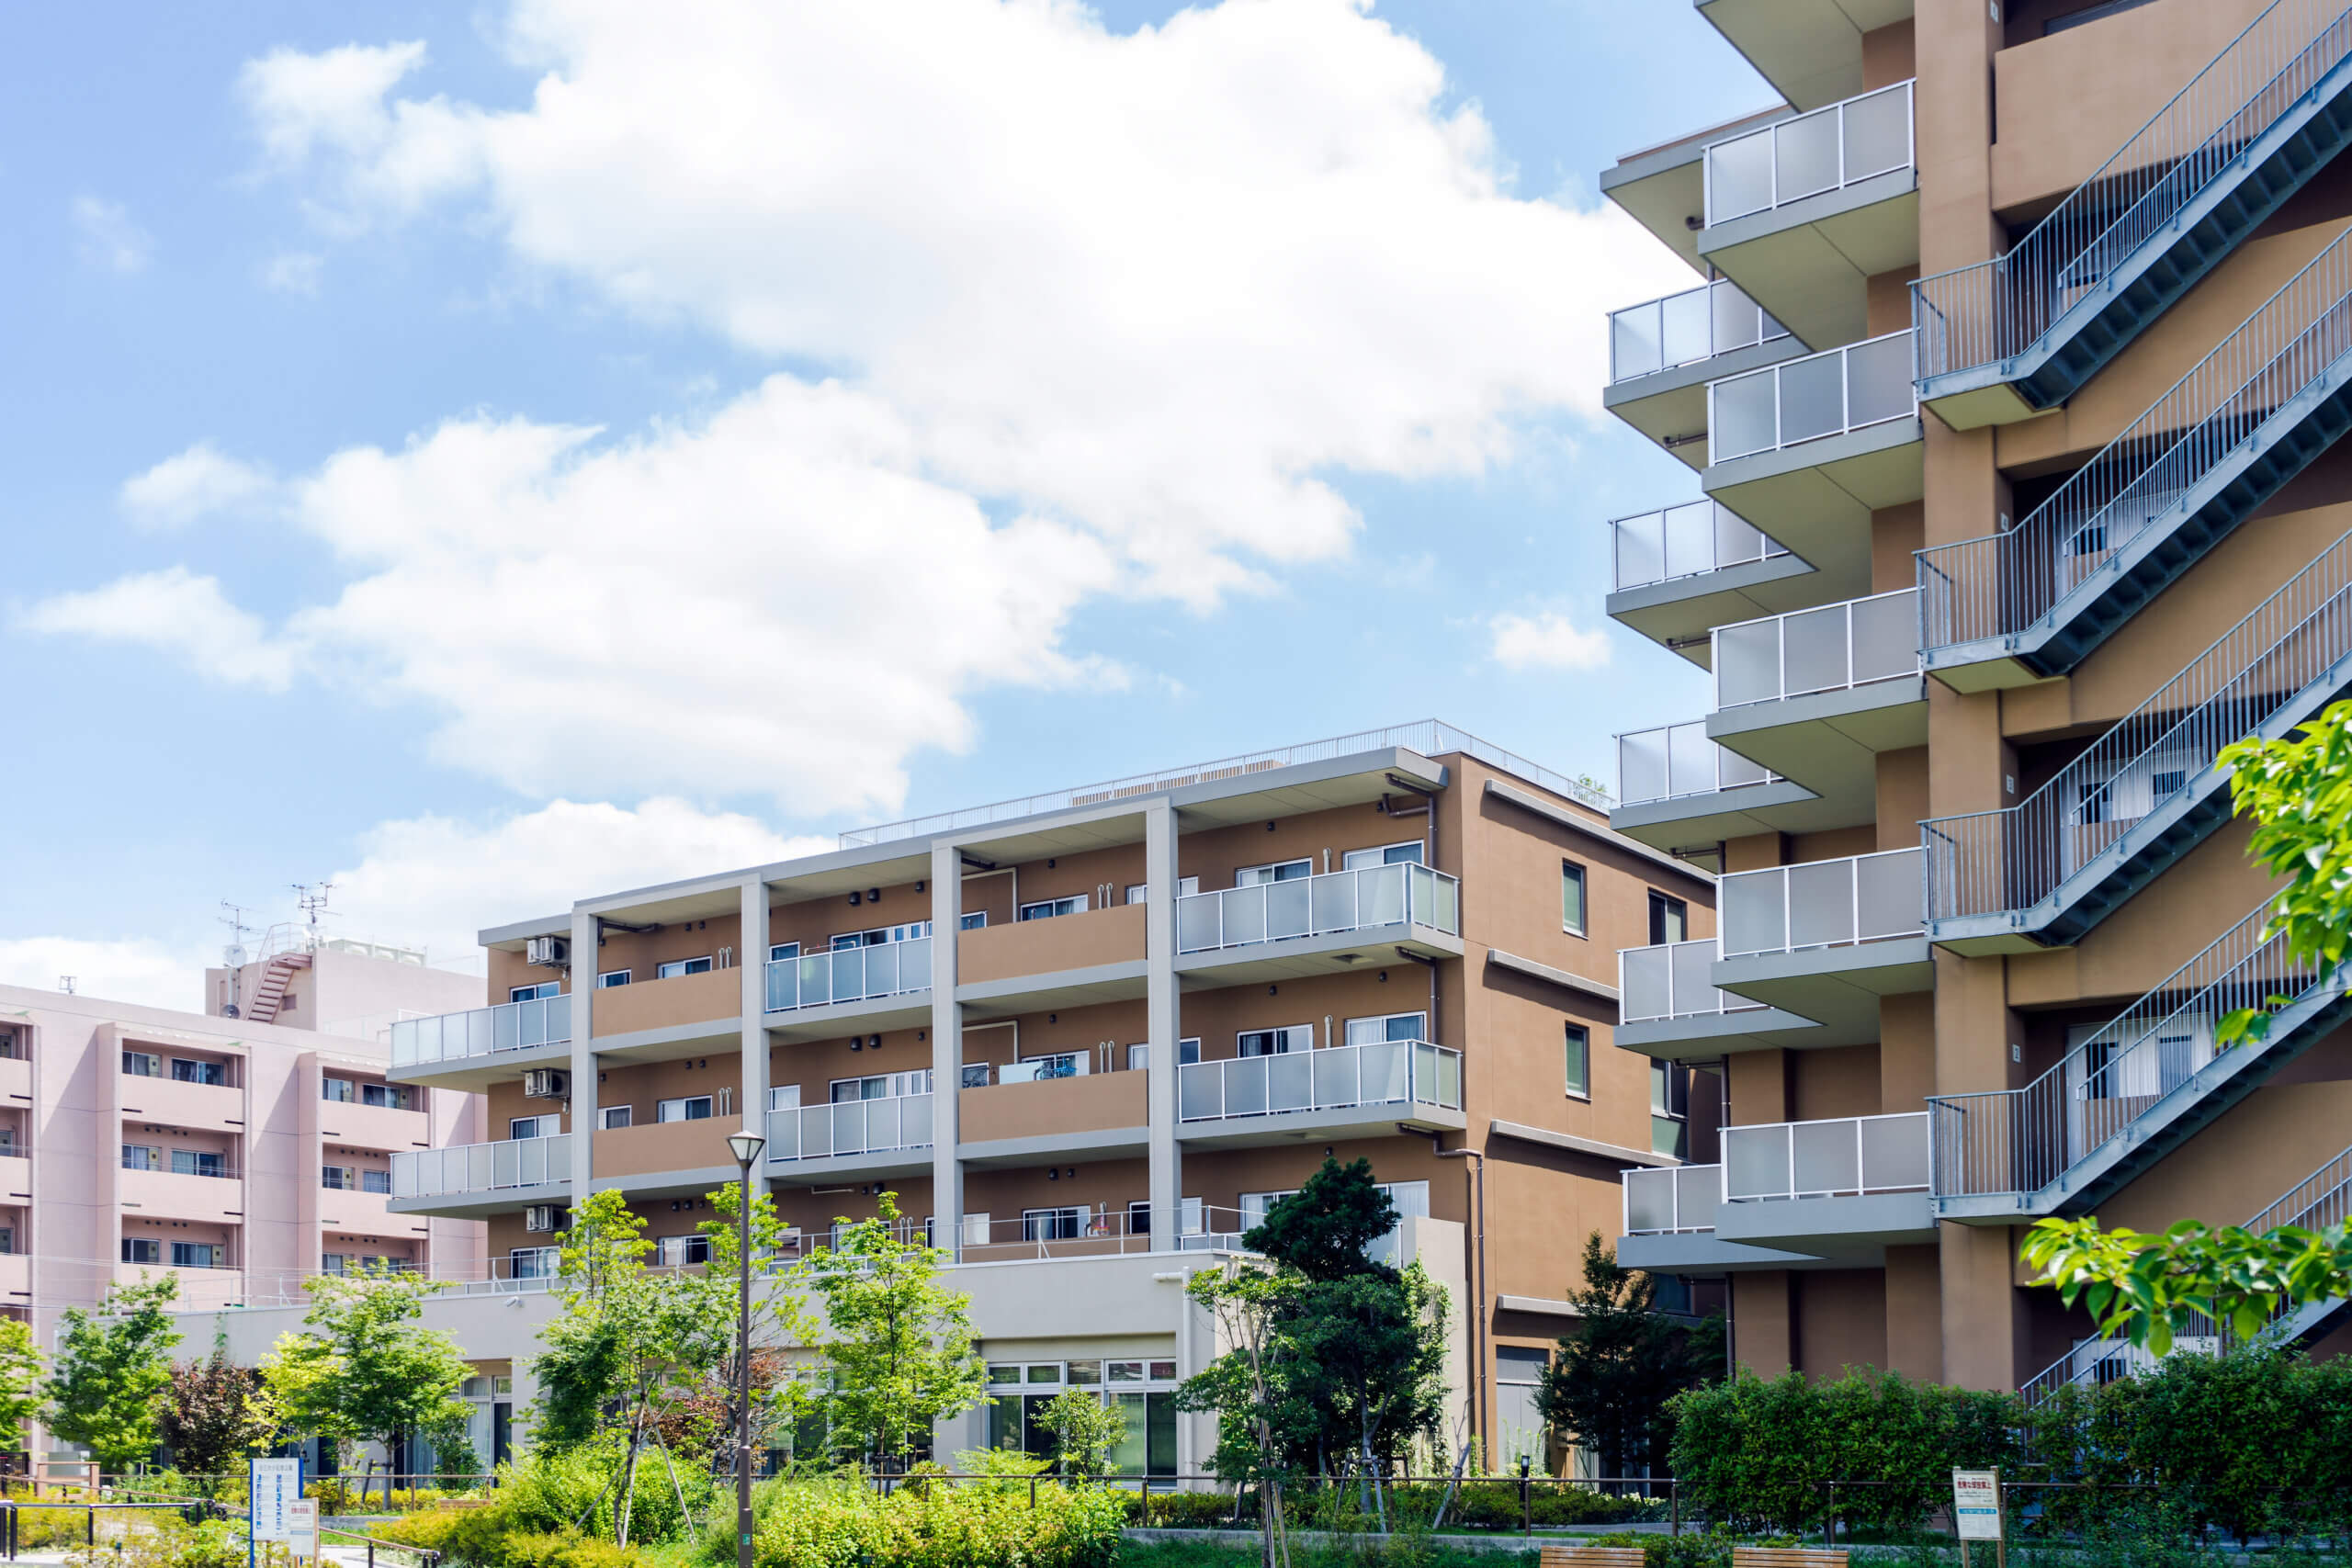 Családok számára tökéletes: kiváló elhelyezkedésű és kialakítású lakások Budapesten